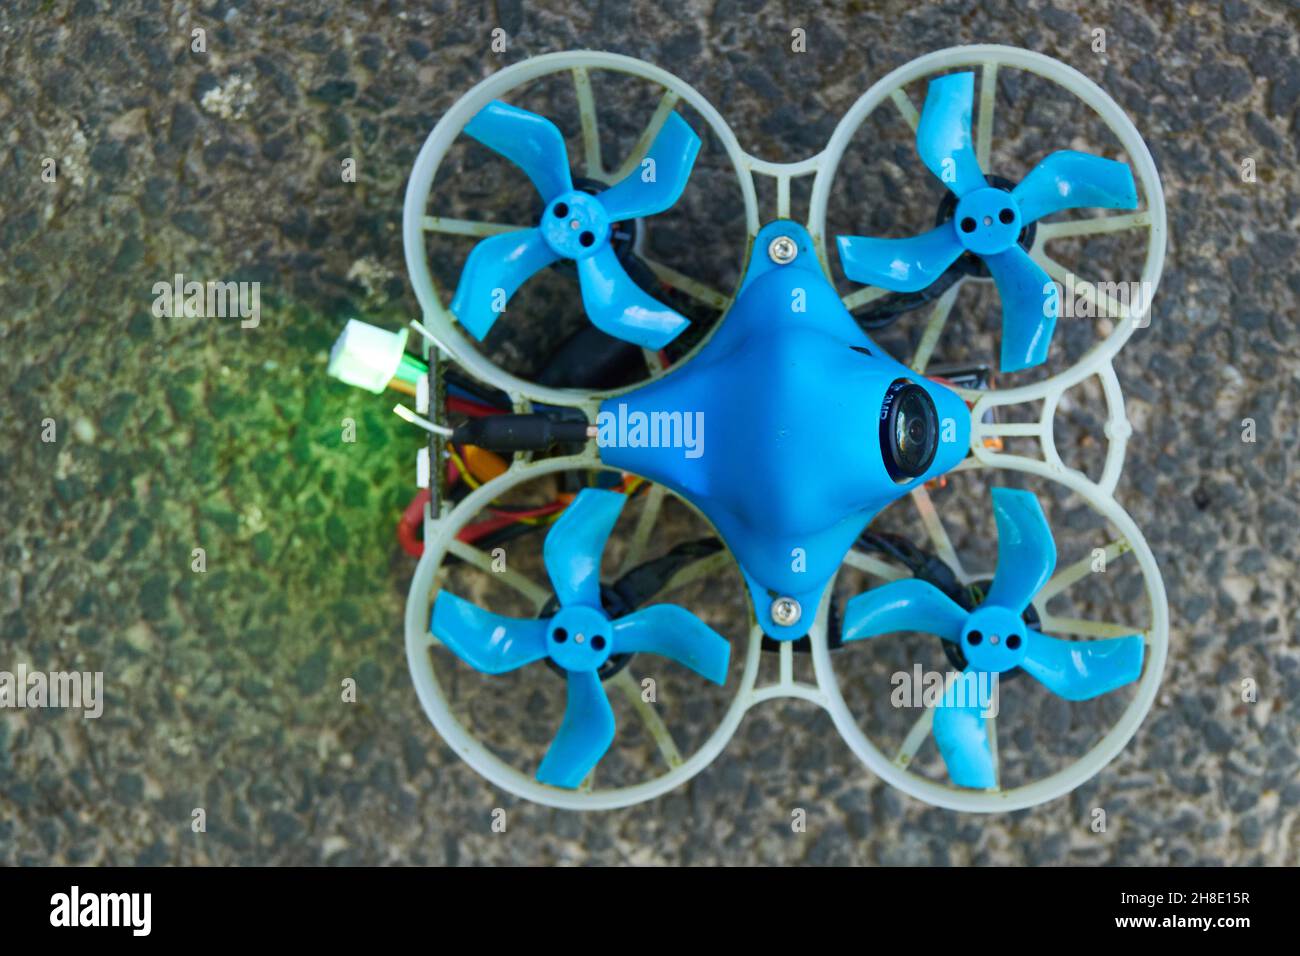 Petite Drone bleu également quad de course, avec la gondole de protection en blanc, se tient sur le sol en pierre, le feu arrière brille vert.Allemagne. Banque D'Images